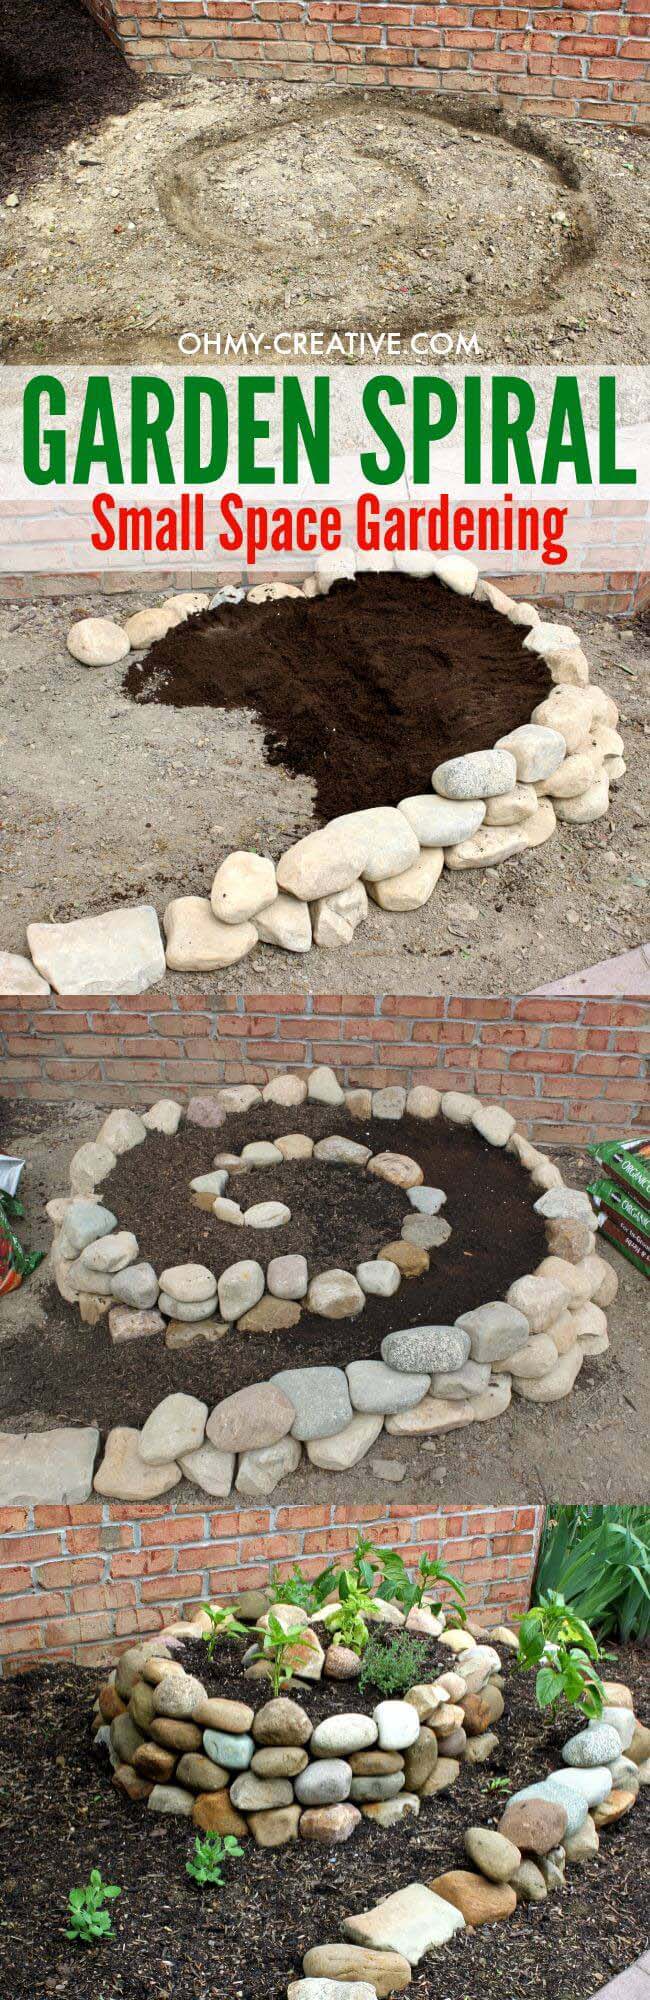 DIY Garden Spiral for Small Spaces #diy #garden #rocks #stones #decorhomeideas